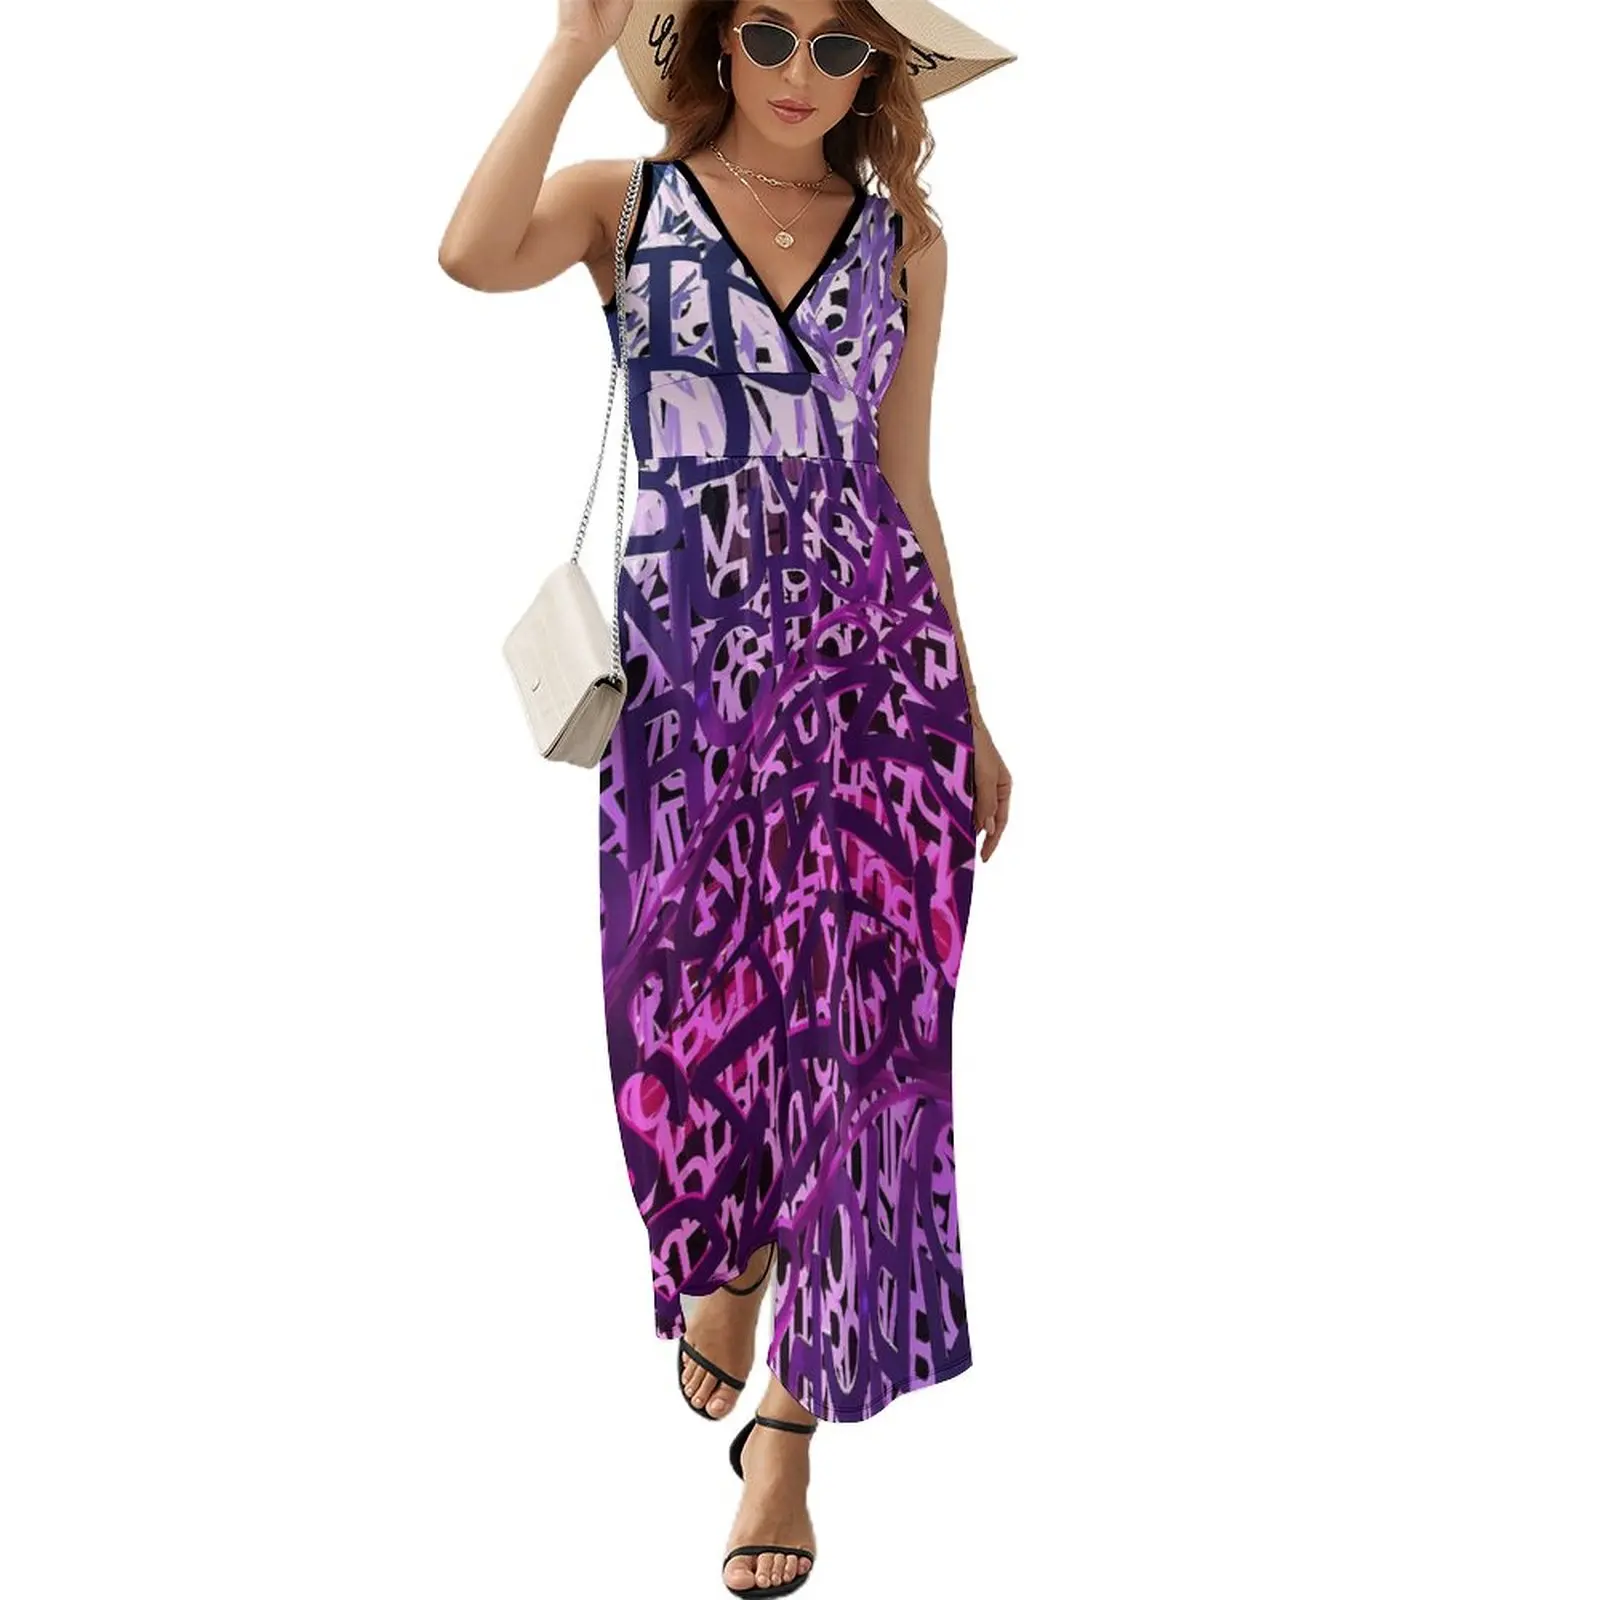 

Платье-макси с абстрактными буквами, фиолетовый градиентный пляжный длинный сарафан в уличном стиле, в стиле бохо, с завышенной талией, с принтом, пикантное летнее